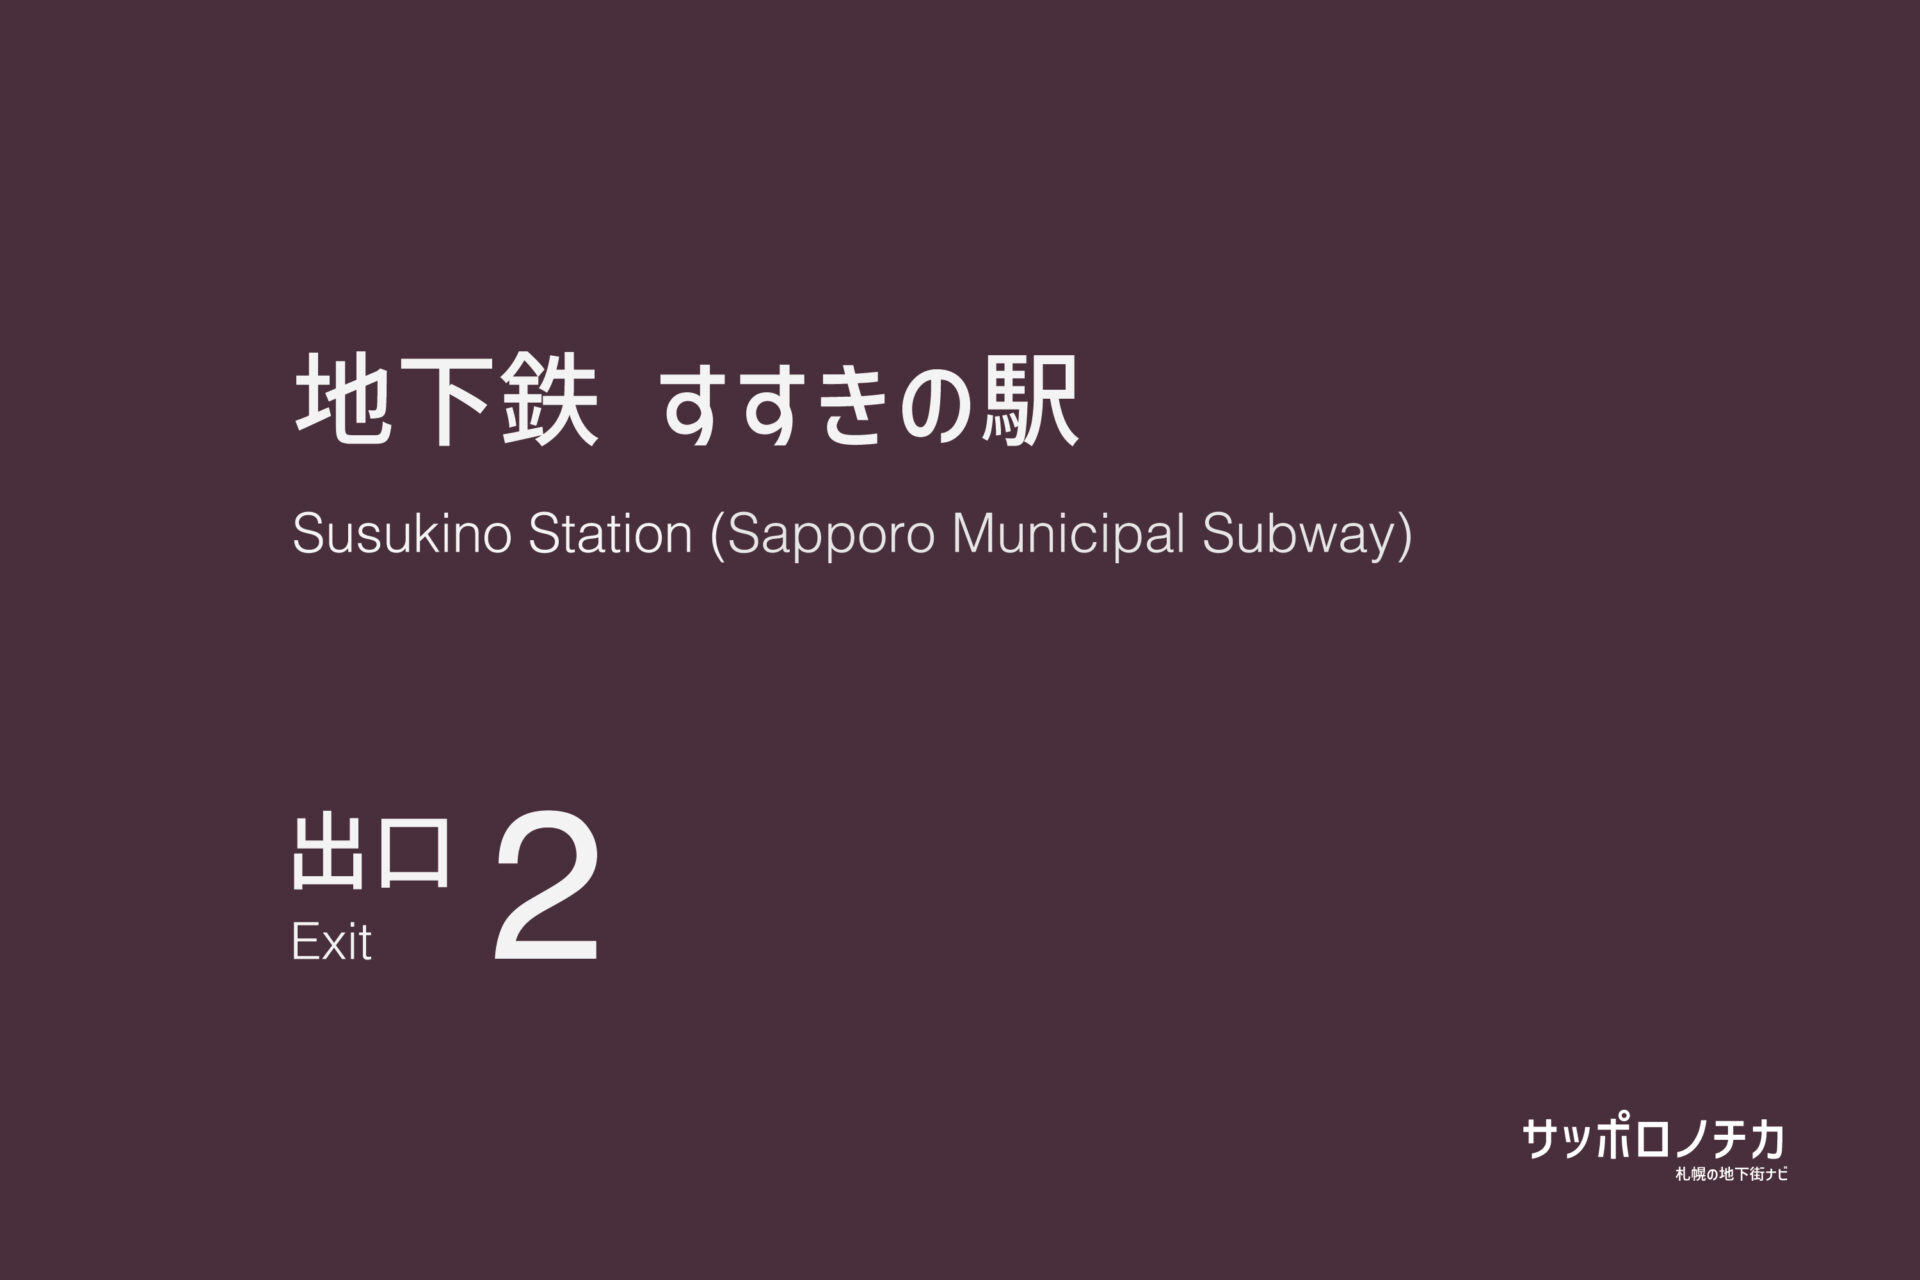 札幌市営地下鉄「すすきの駅」2番出口